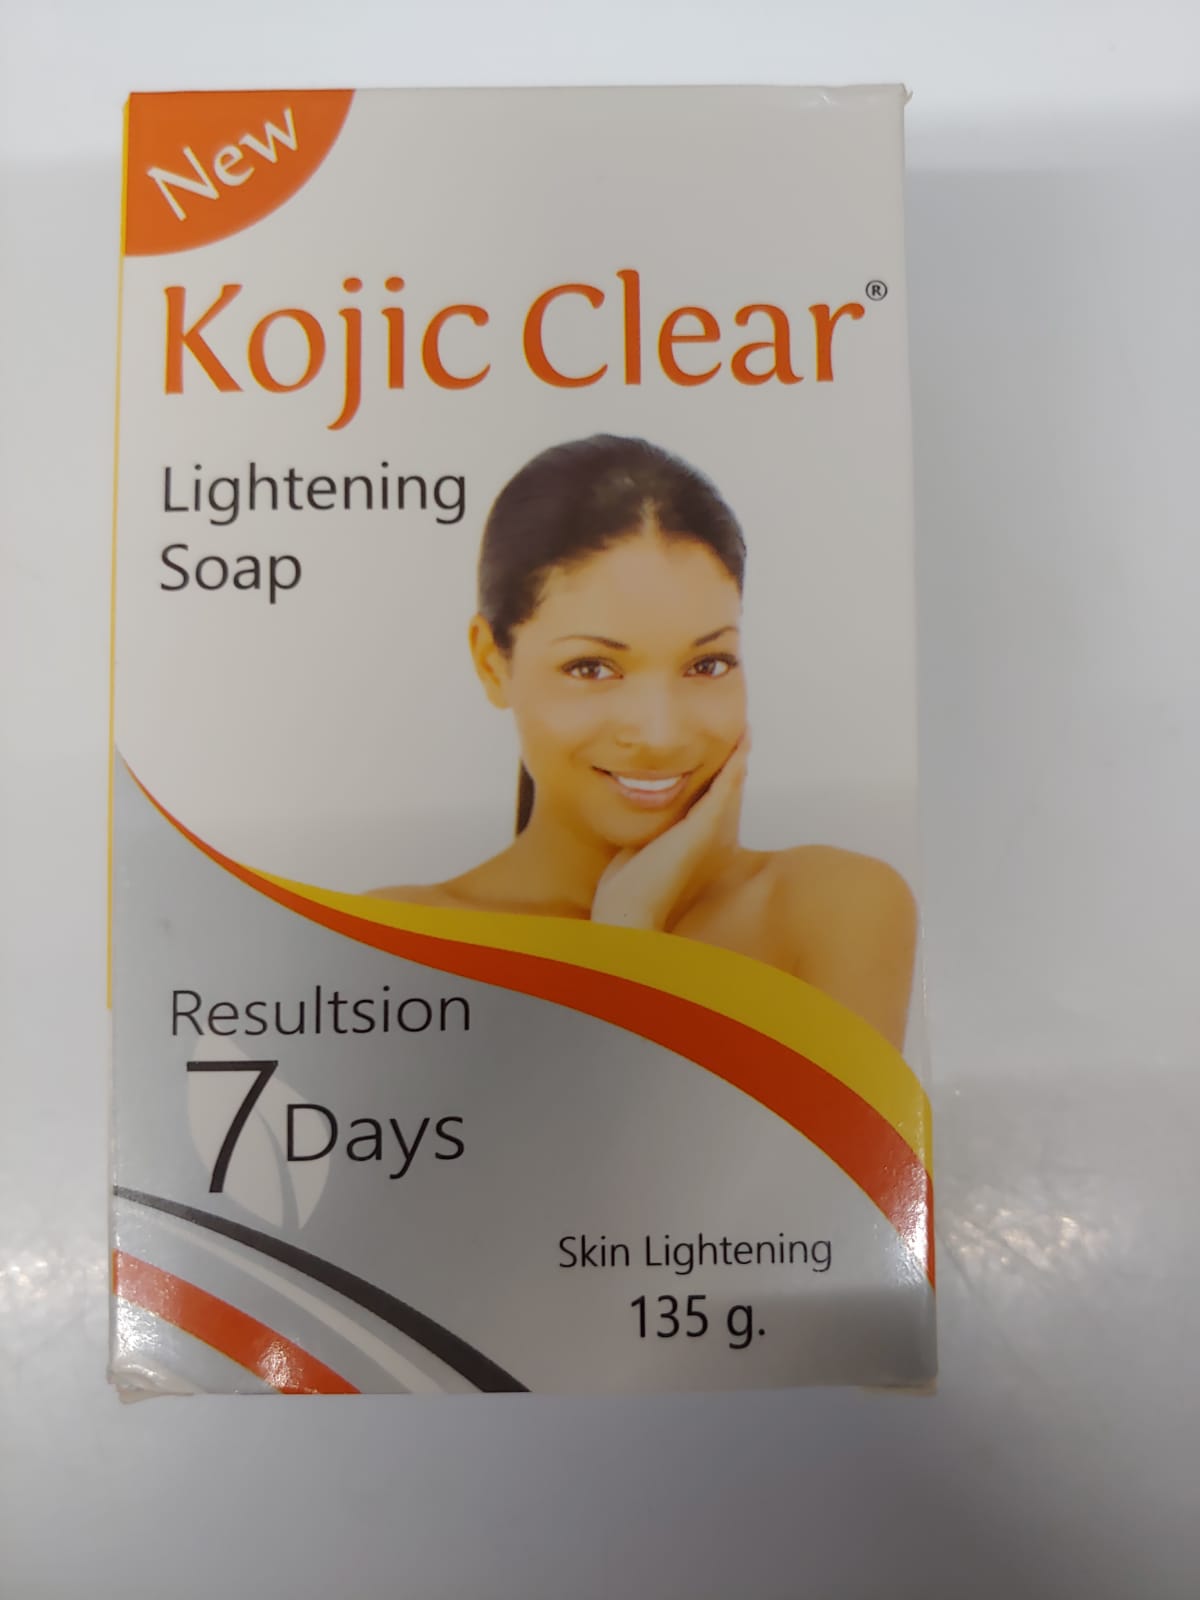 Kojic Clear Soap